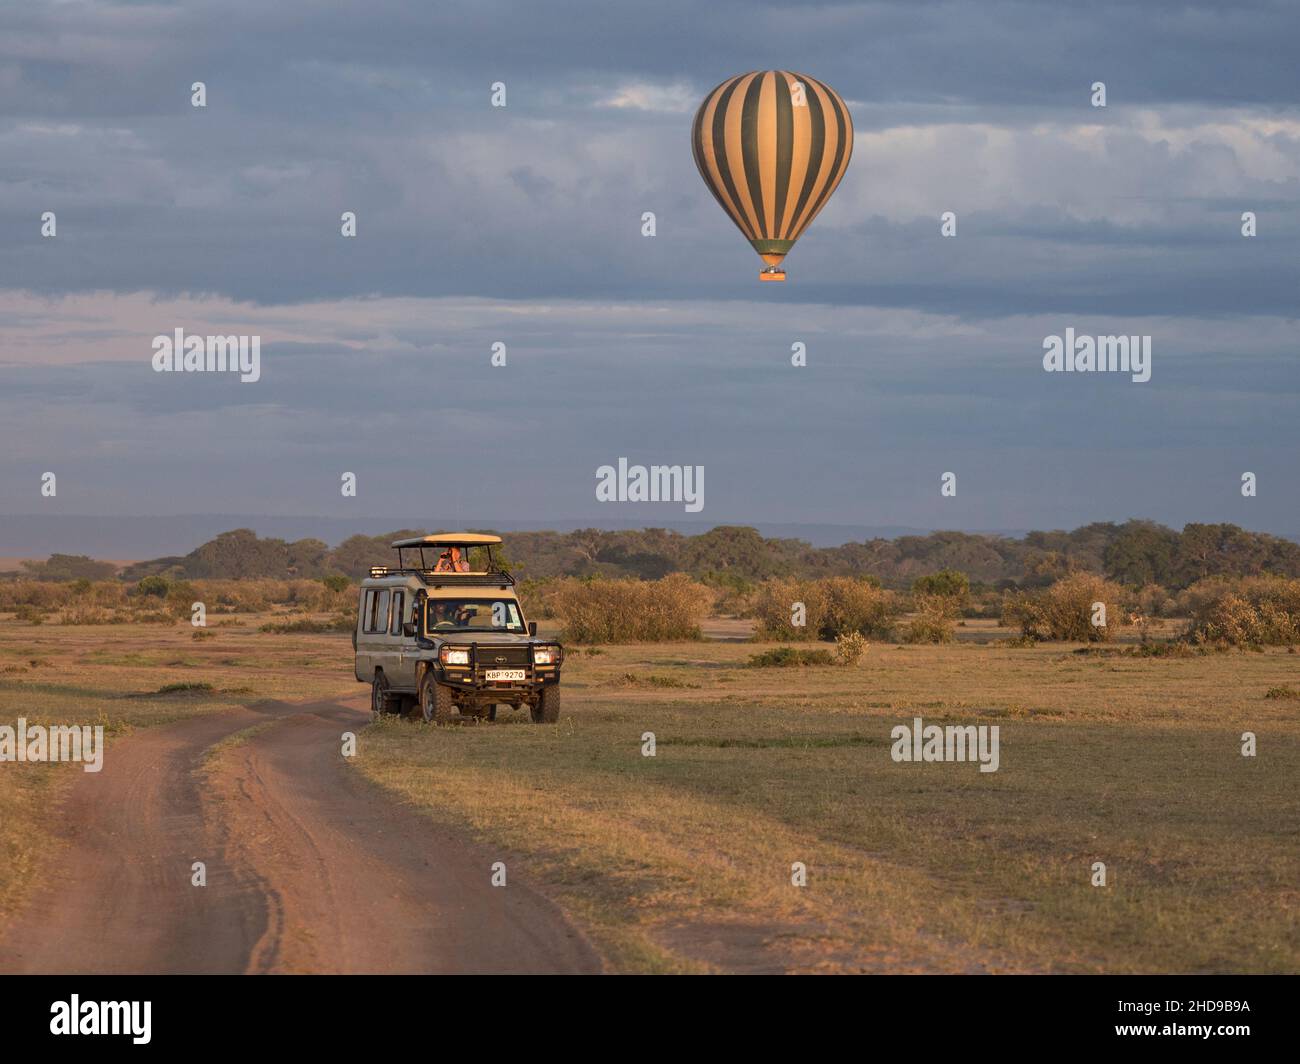 Vue sur le véhicule d'observation de la faune et le ballon d'air chaud, à la lumière du matin, au nord-est de Masai Mara, Kenya Banque D'Images